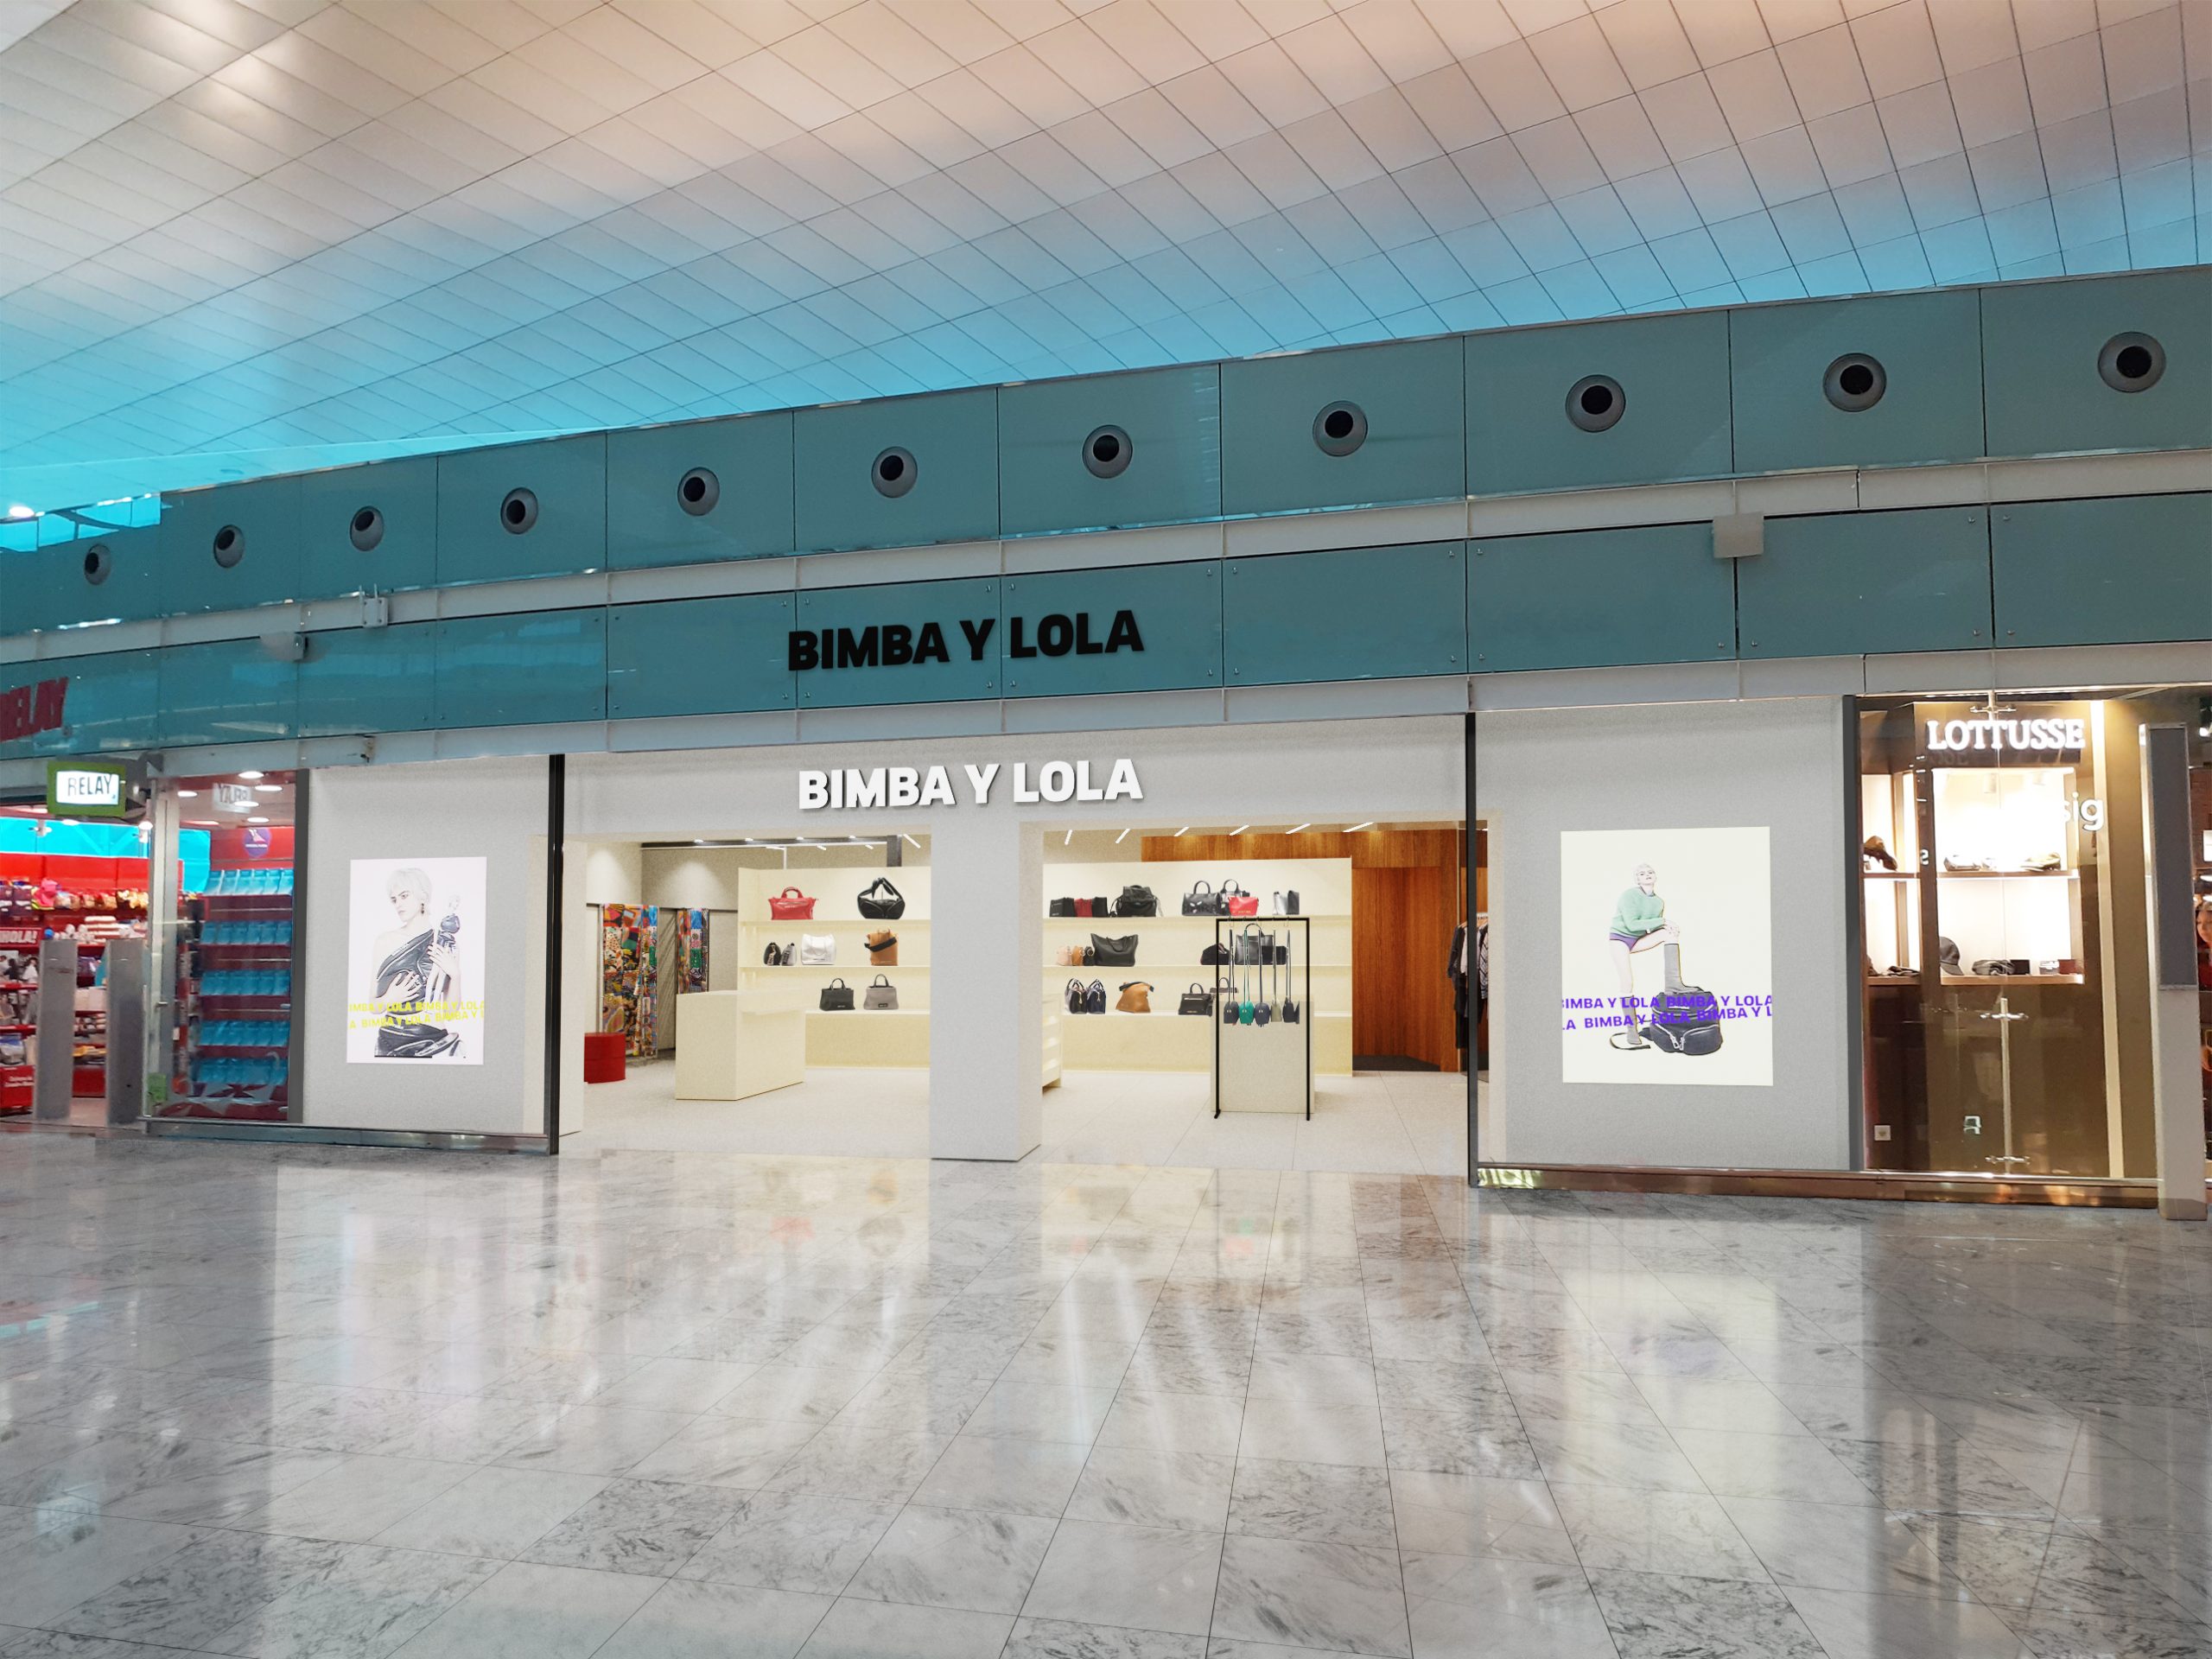 Tienda Bimba y Lola. Aeropuerto del Prat. Barcelona